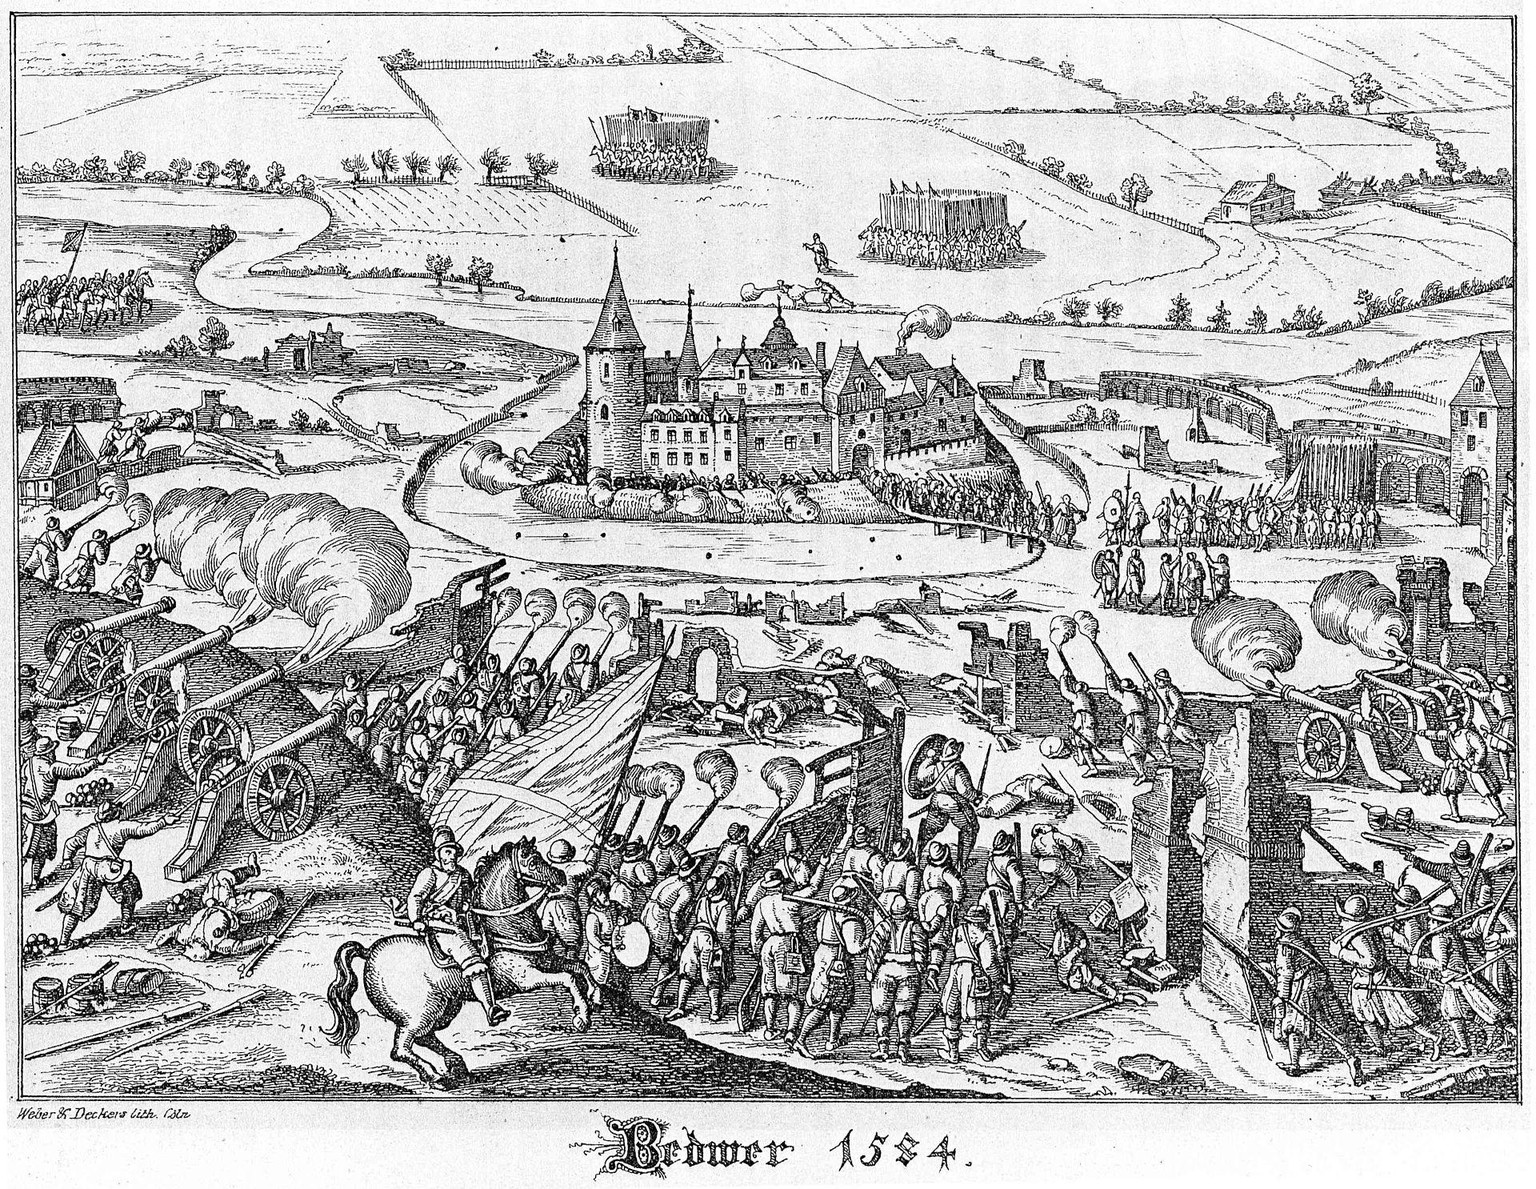 Der Versuch der Einführung der protestantischen Lehre im Erzstift und Kurfürstentum Köln schlug fehl. Im Jahre 1584 wurde Bedburg von den katholischen Truppen belagert und 1585 schliesslich erobert.